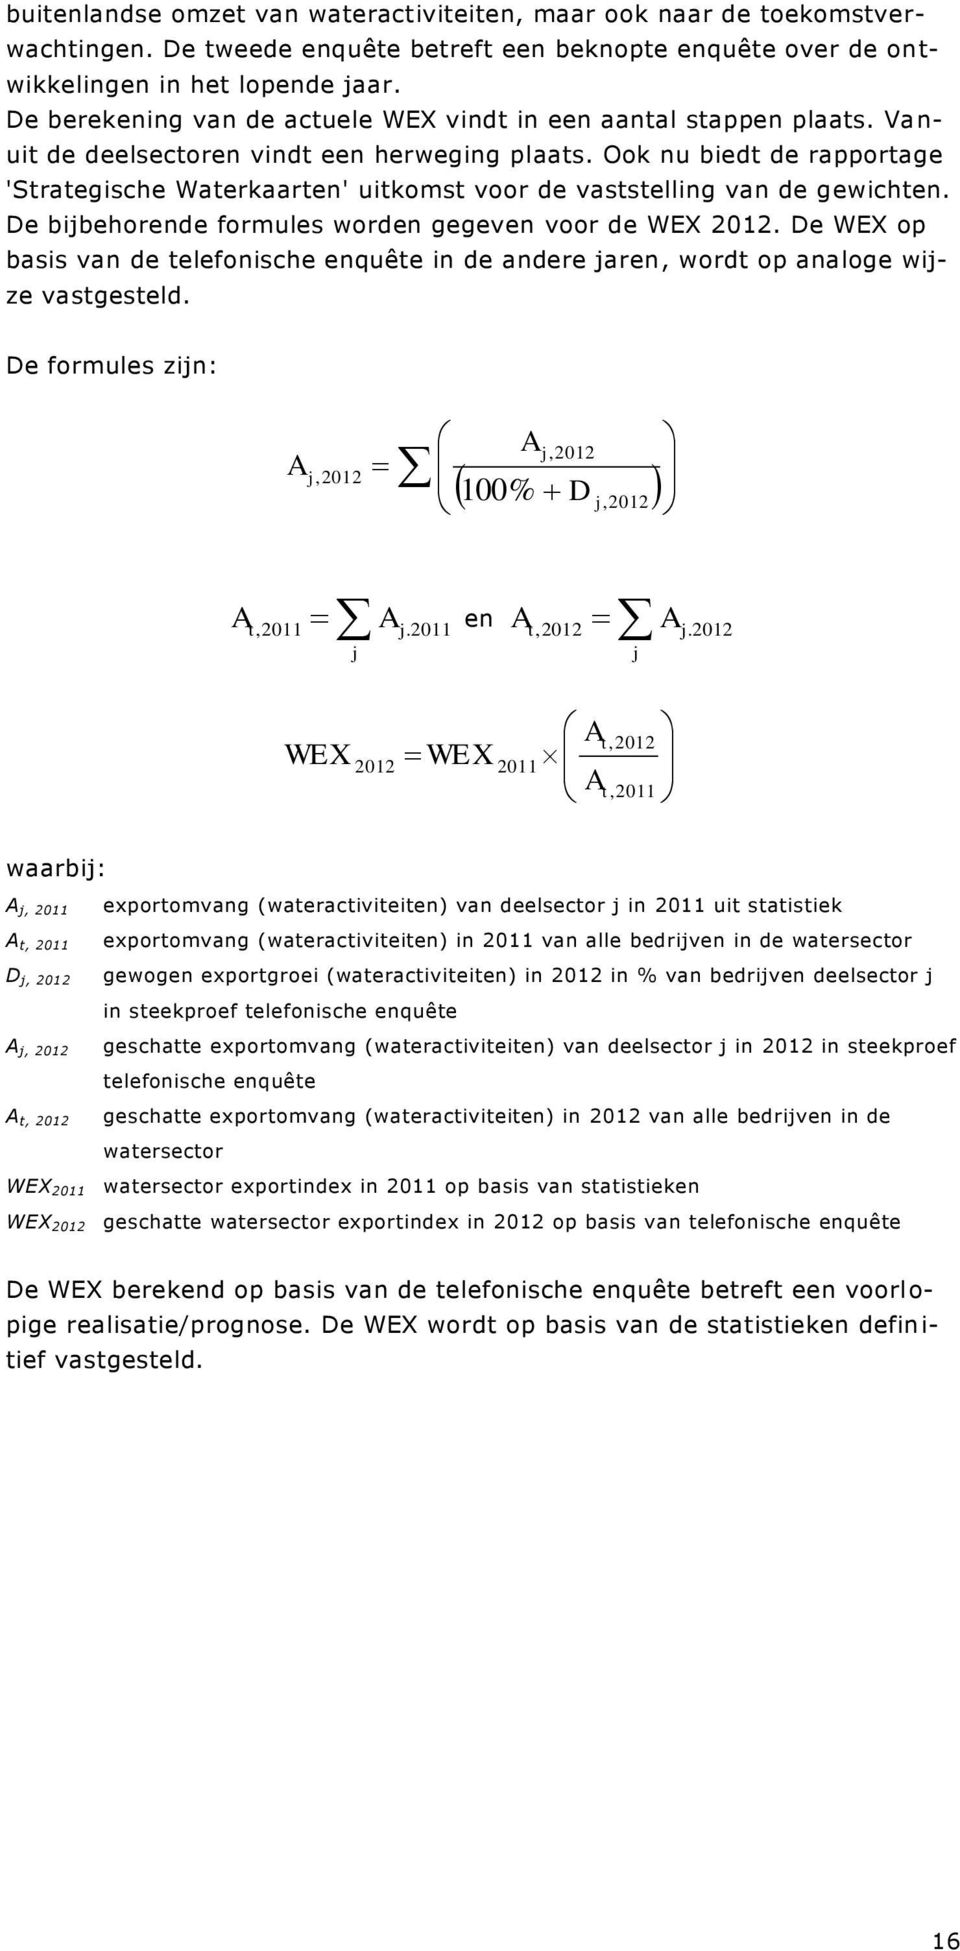 Ook nu biedt de rapportage 'Strategische Waterkaarten' uitkomst voor de vaststelling van de gewichten. De bijbehorende formules worden gegeven voor de WEX 2012.